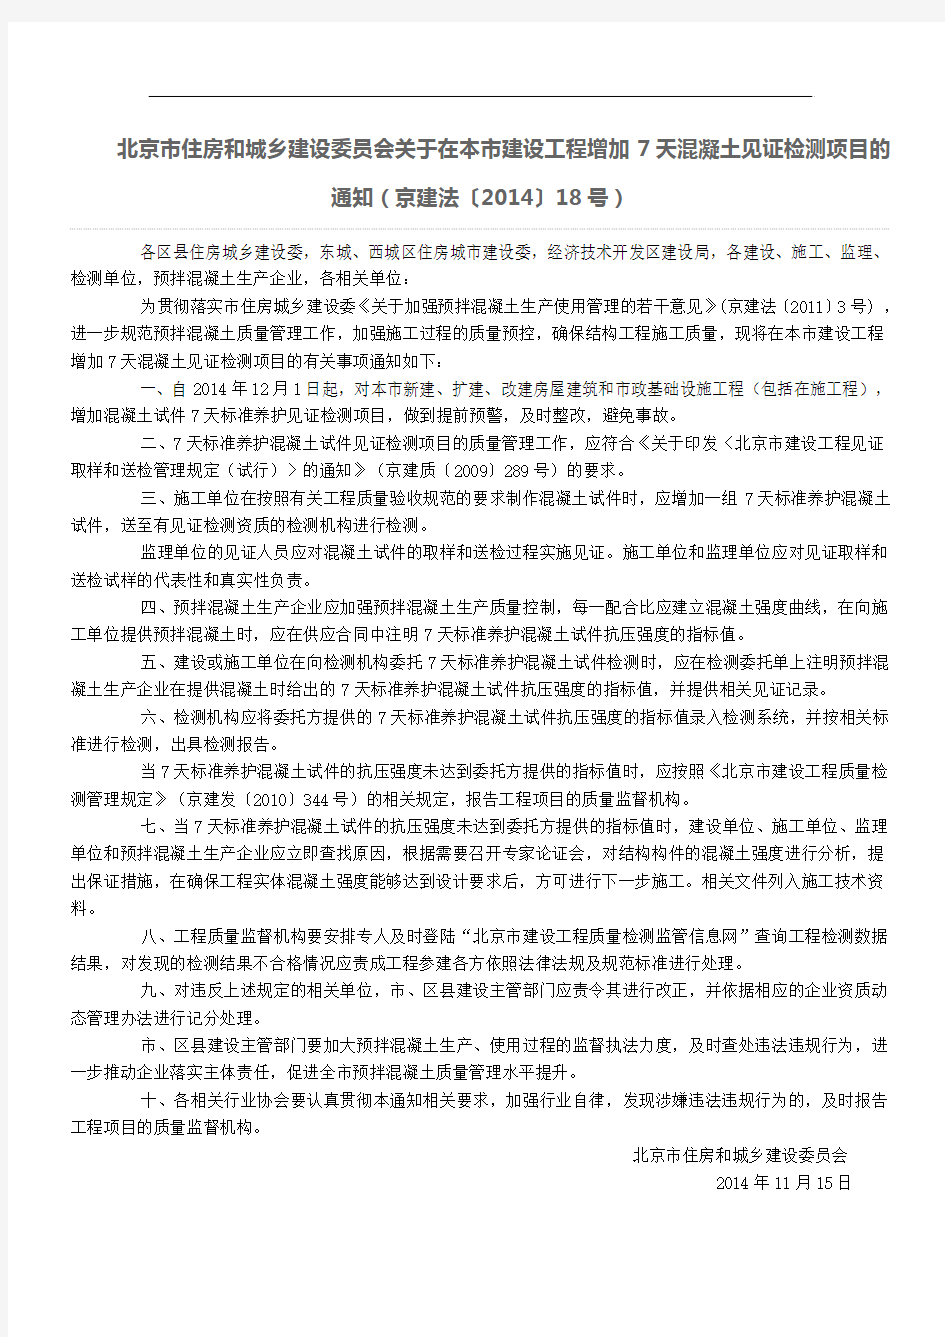 北京市住房和城乡建设委员会关于在本市建设工程增加7天混凝土见证检测项目的通知(京建法〔2014〕18号)